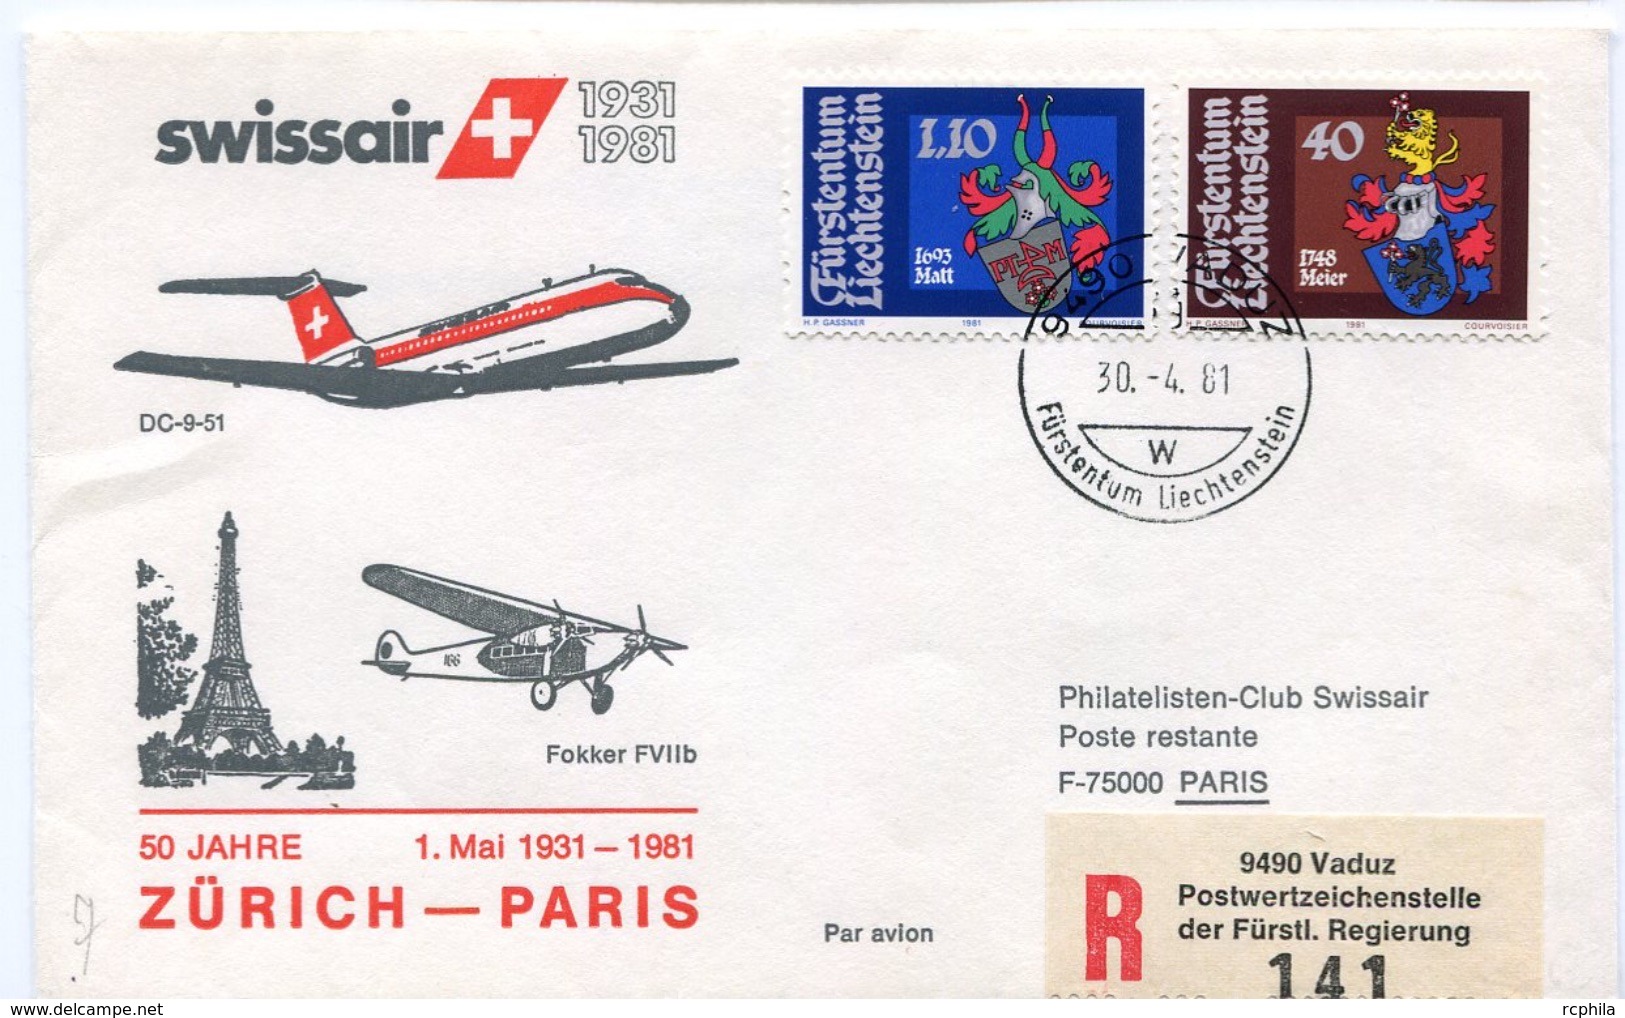 RC 6561 SUISSE SWITZERLAND 1981 1er VOL SWISSAIR ZURICH - PARIS FRANCE LIECHTENSTEIN FFC LETTRE COVER - Eerste Vluchten